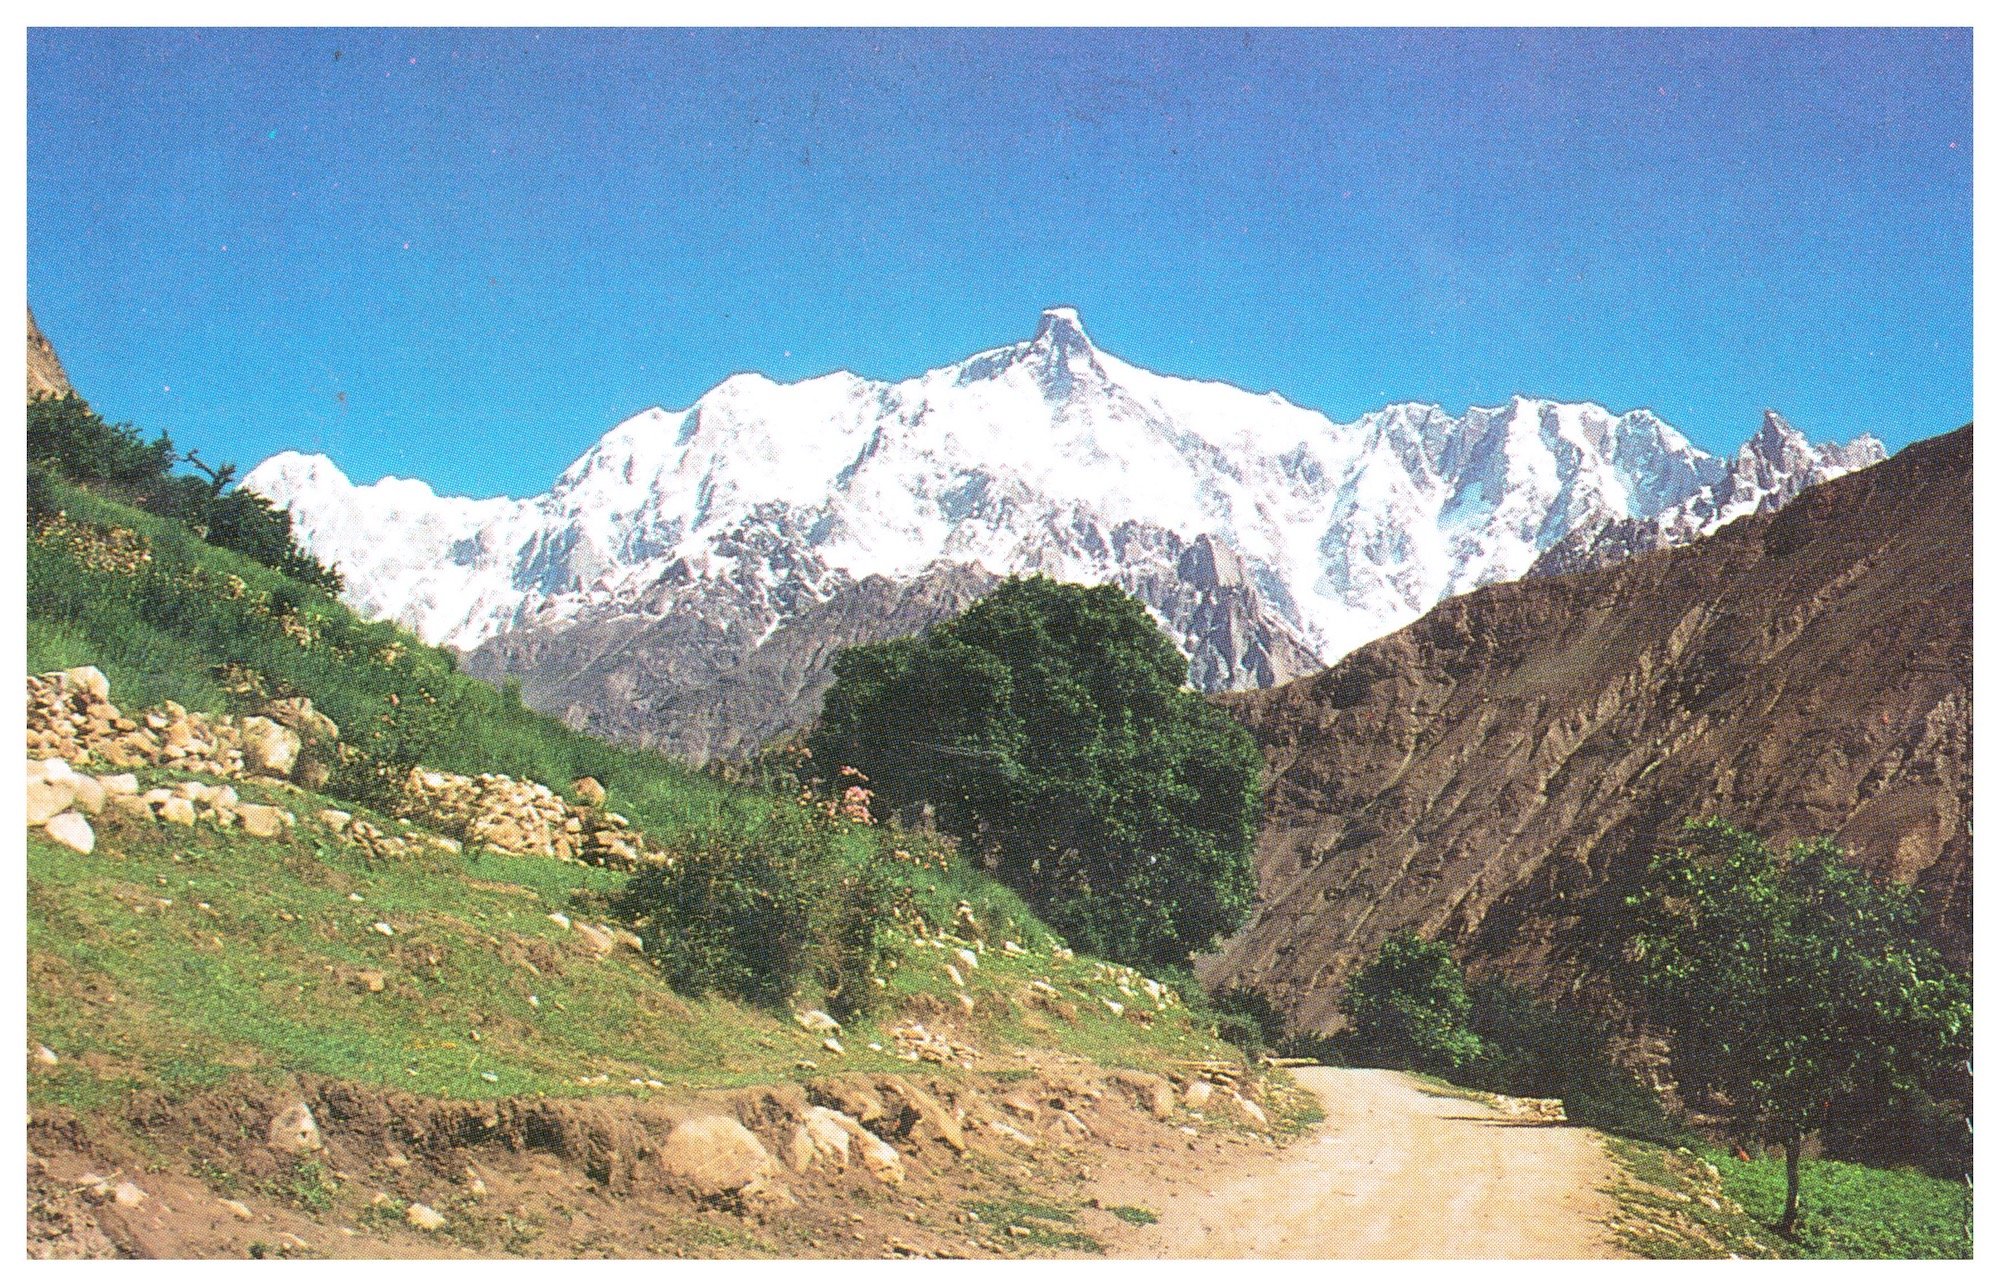 Jeepstrasse nach Uper Nagar mit Blick auf den Ulter Peak (7388 m).